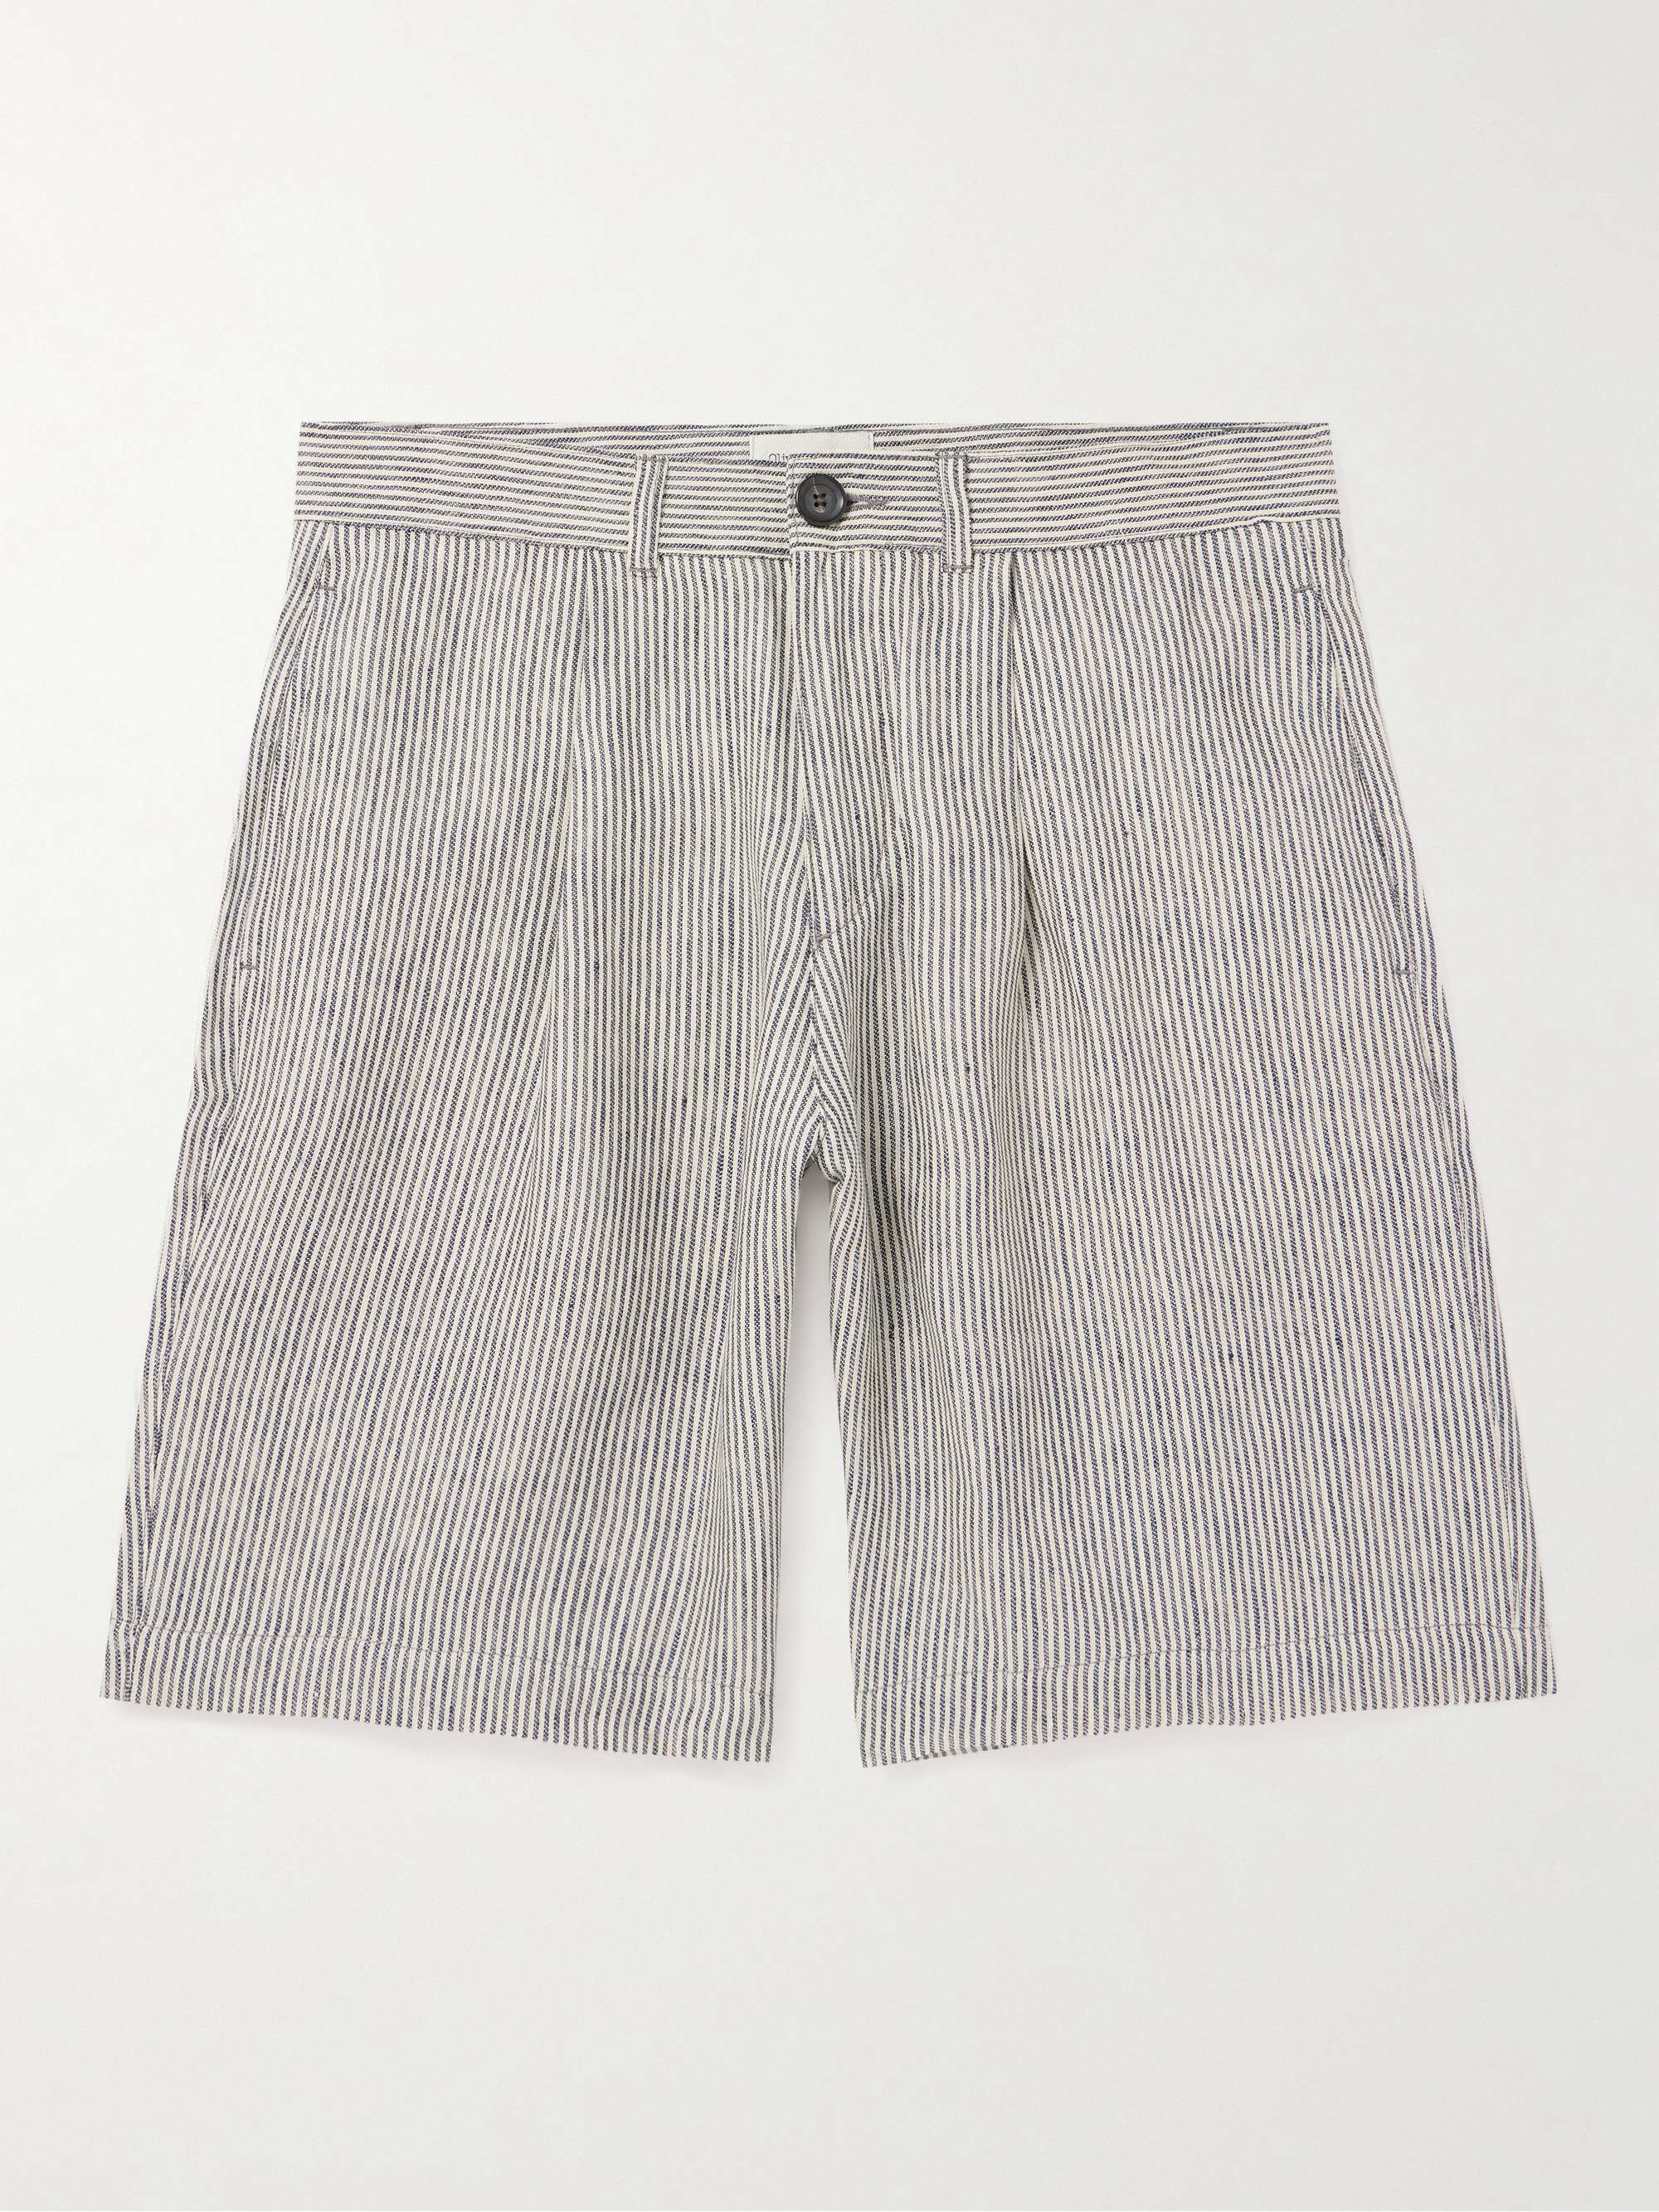 OLIVER SPENCER Straight-Leg Pleated Striped Linen Shorts for Men | MR ...